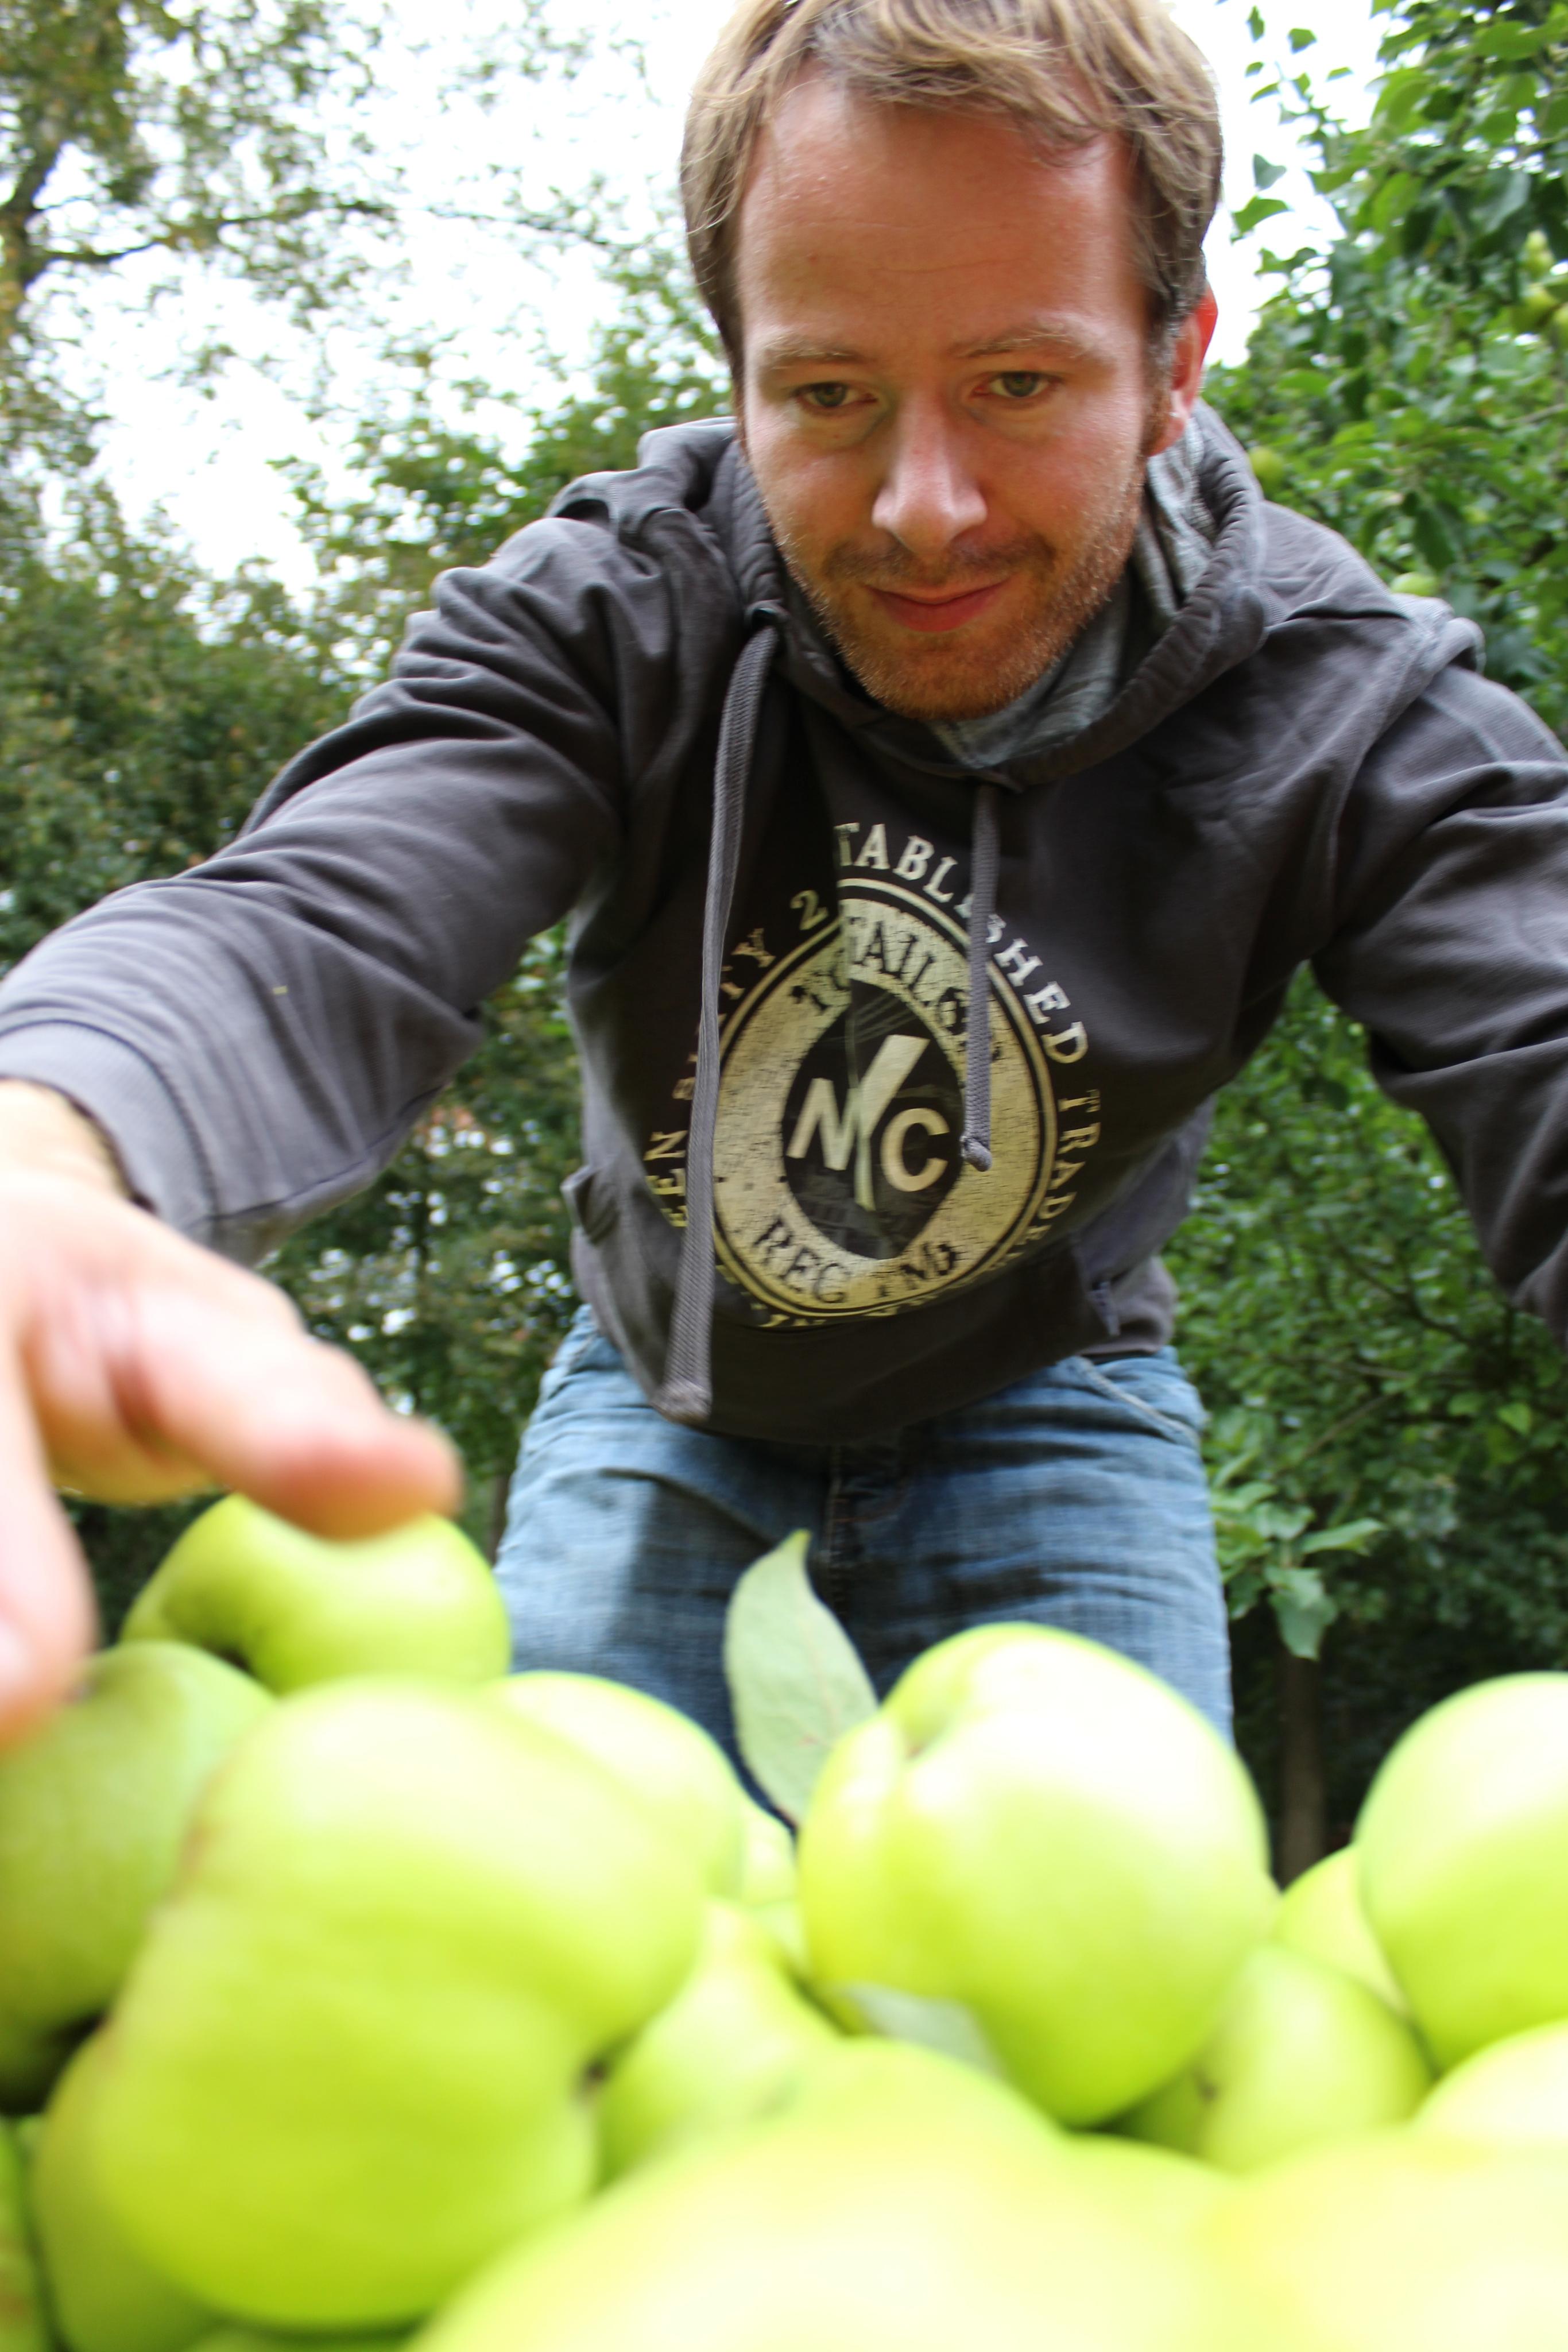 Selbstgepflückt und ab zur Mosterei. Unsere erste Apfelernte im vergangenen Jahr. #Apfelsaft #regionalergehtsnicht